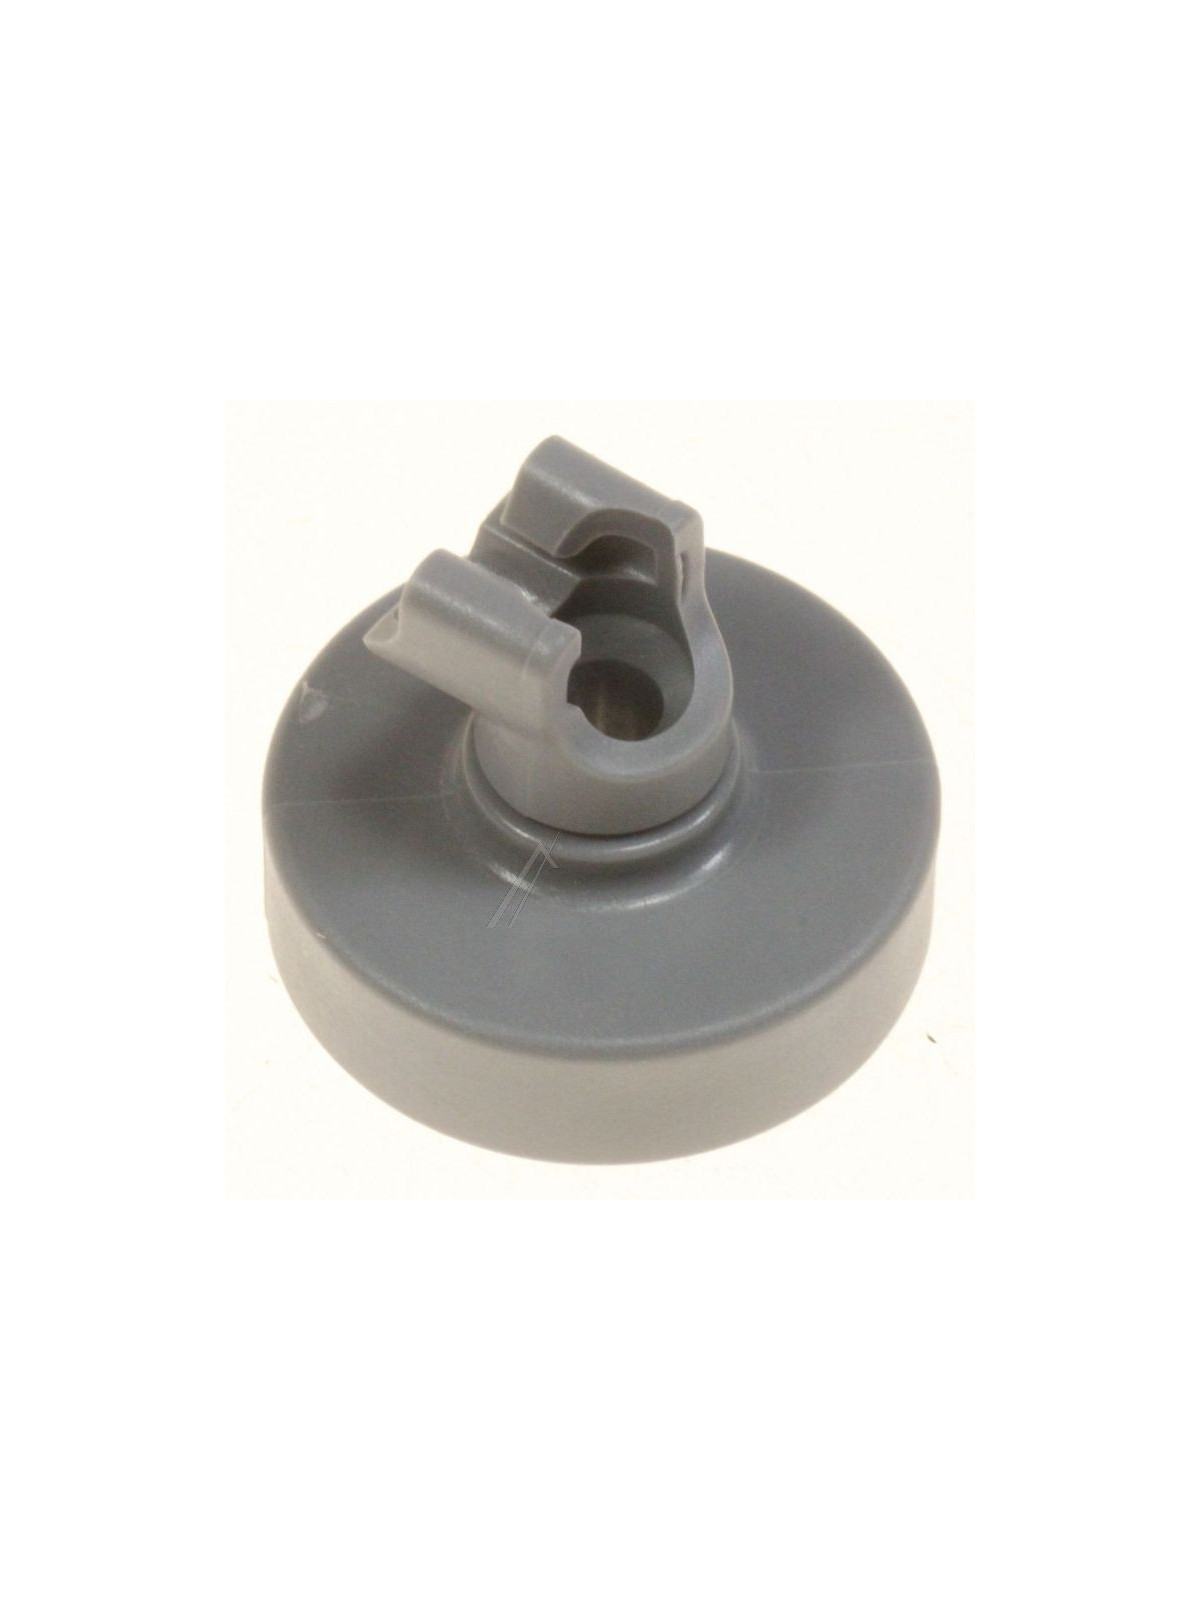 Roulette panier inférieur Smeg LSA6047 / Essentiel B ELV471 - Lave vaisselle